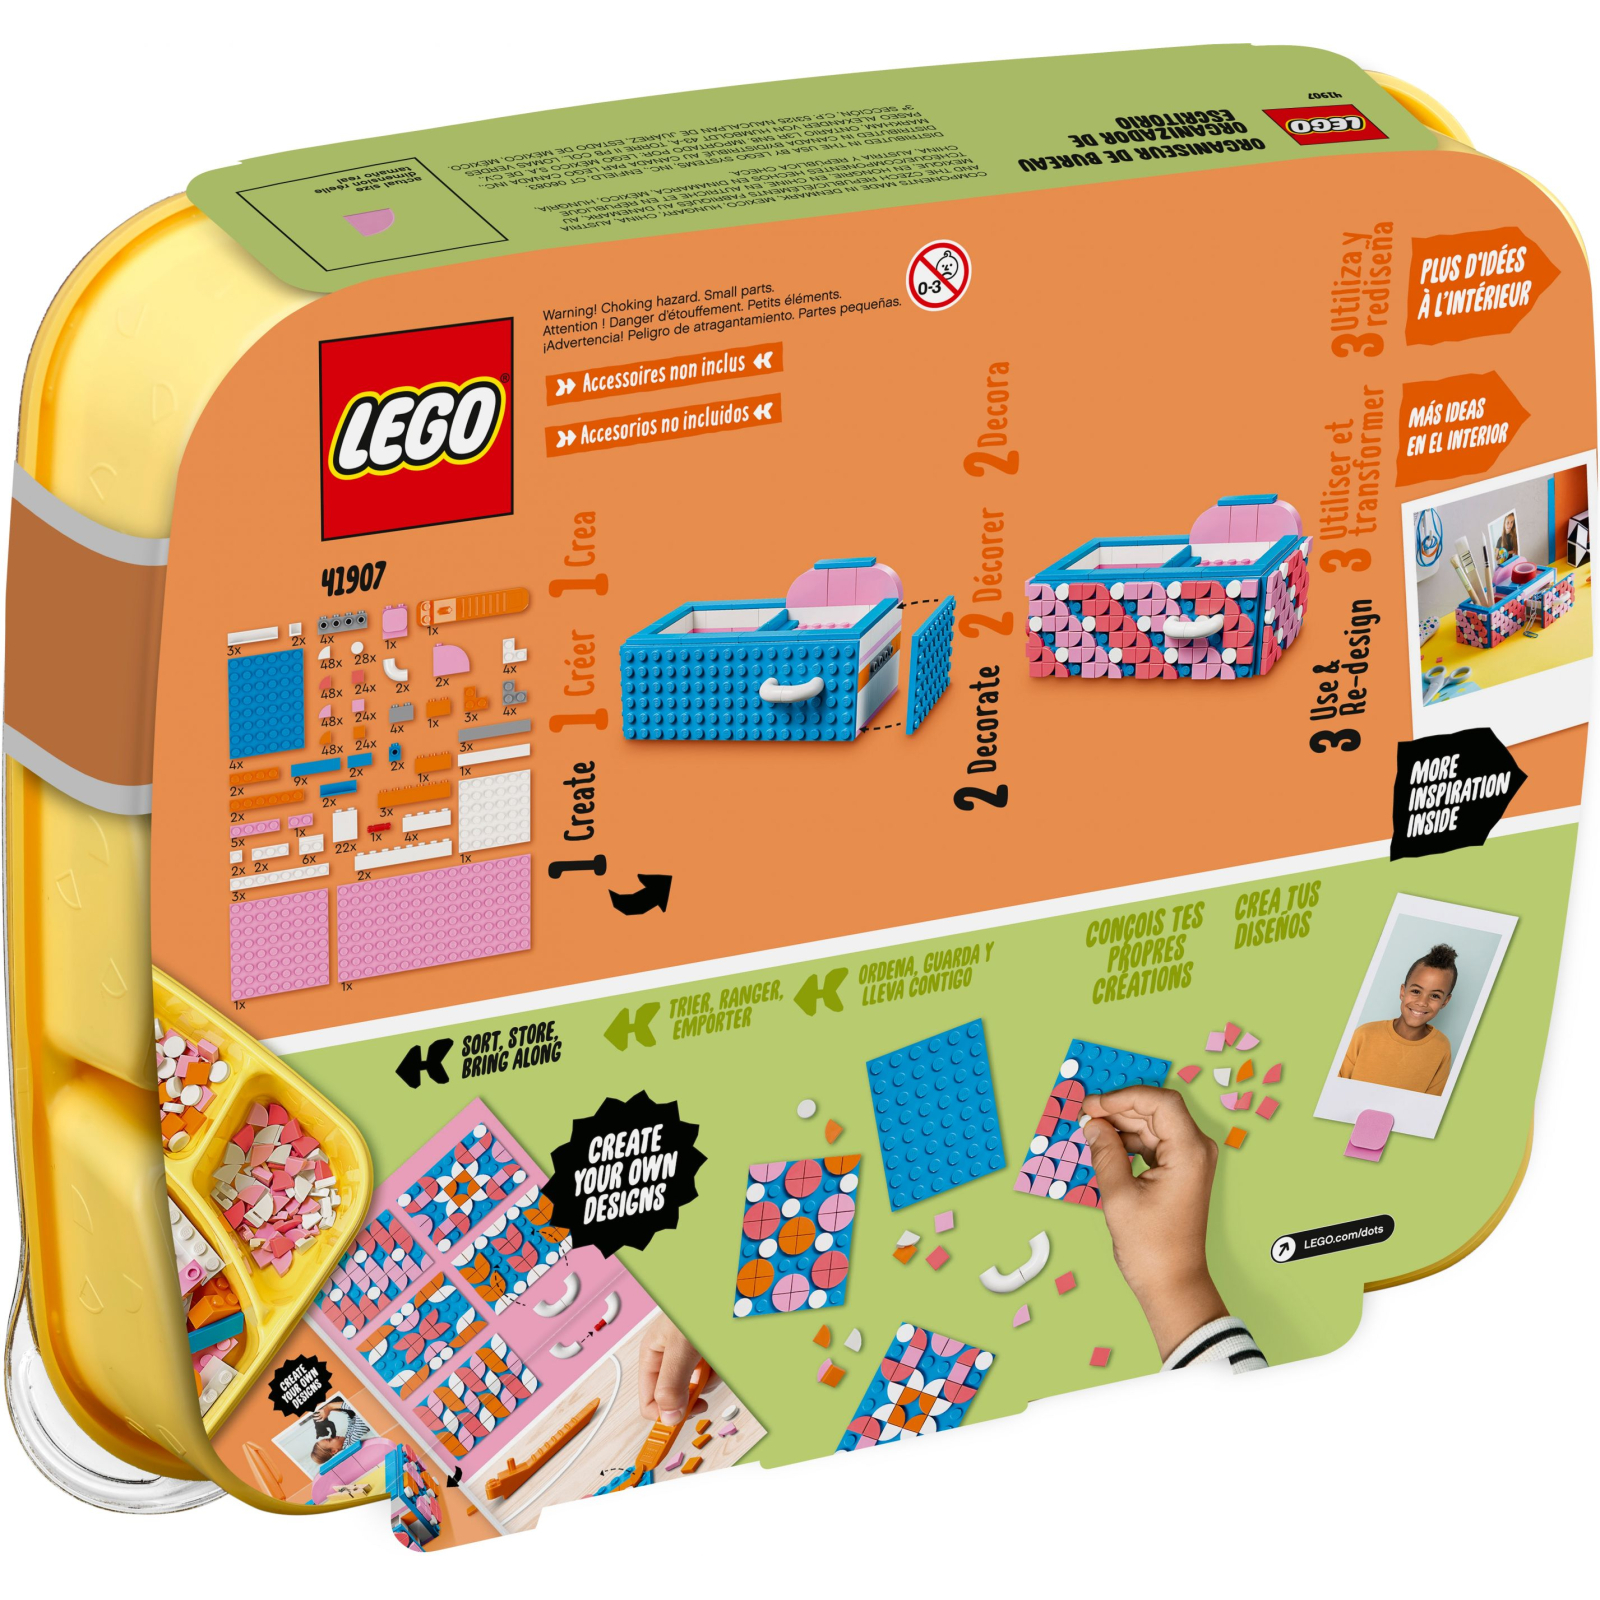 Конструктор LEGO DOTs серія 2 405 деталей (41907) зображення 7